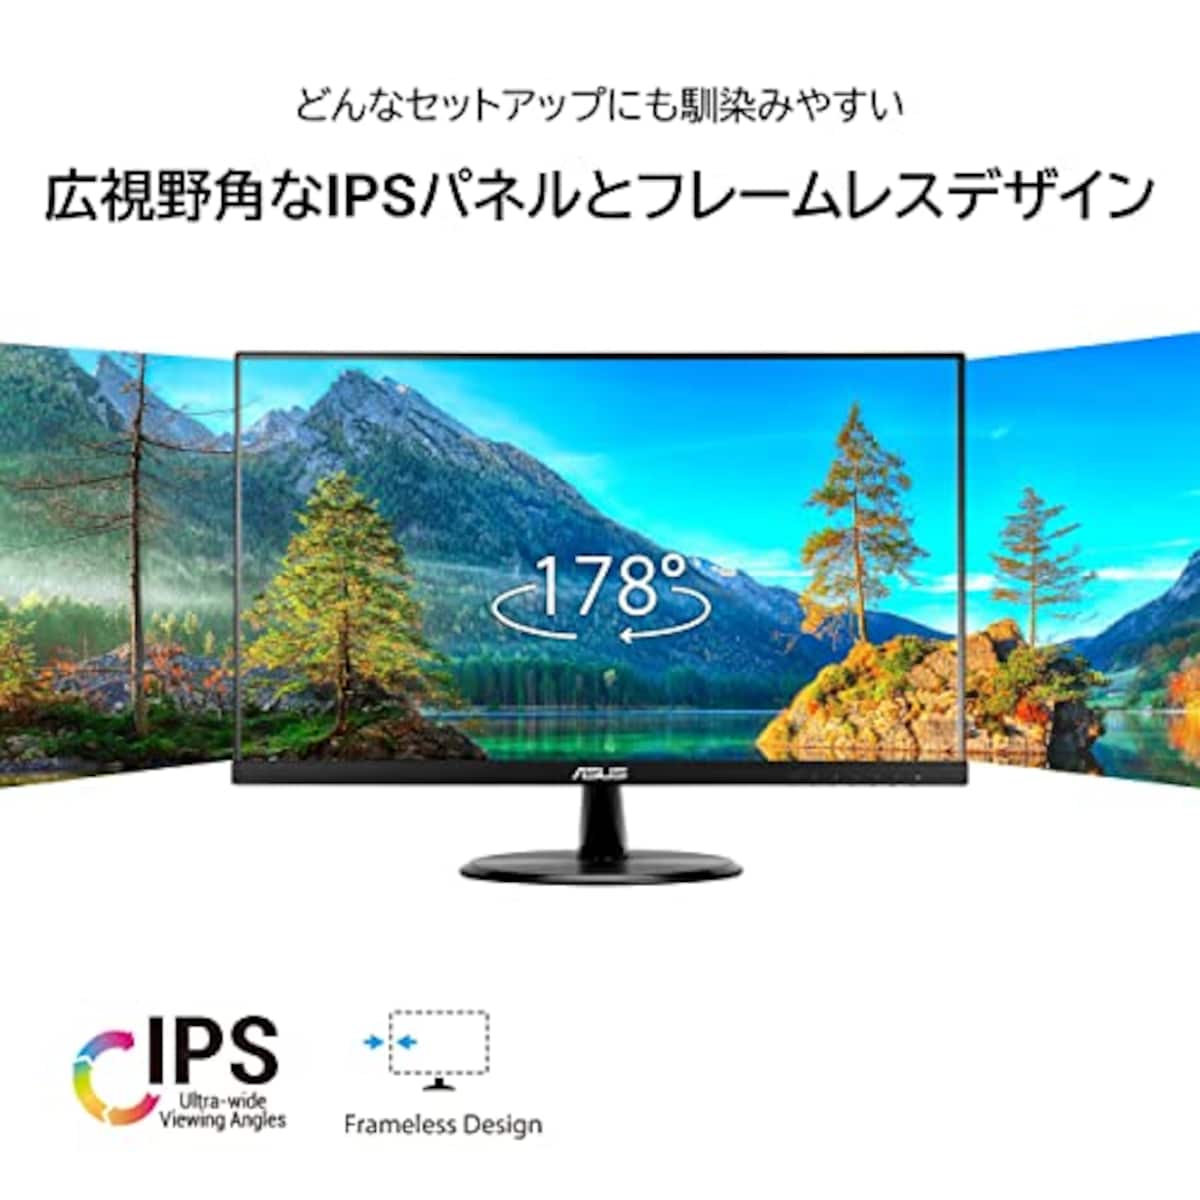  【Amazon.co.jp限定】 ASUS ゲーミングモニター 75Hz 23.8インチ モニター IPS FHD 1ms HDMI1.4(x2) スピーカー VP249HV画像3 